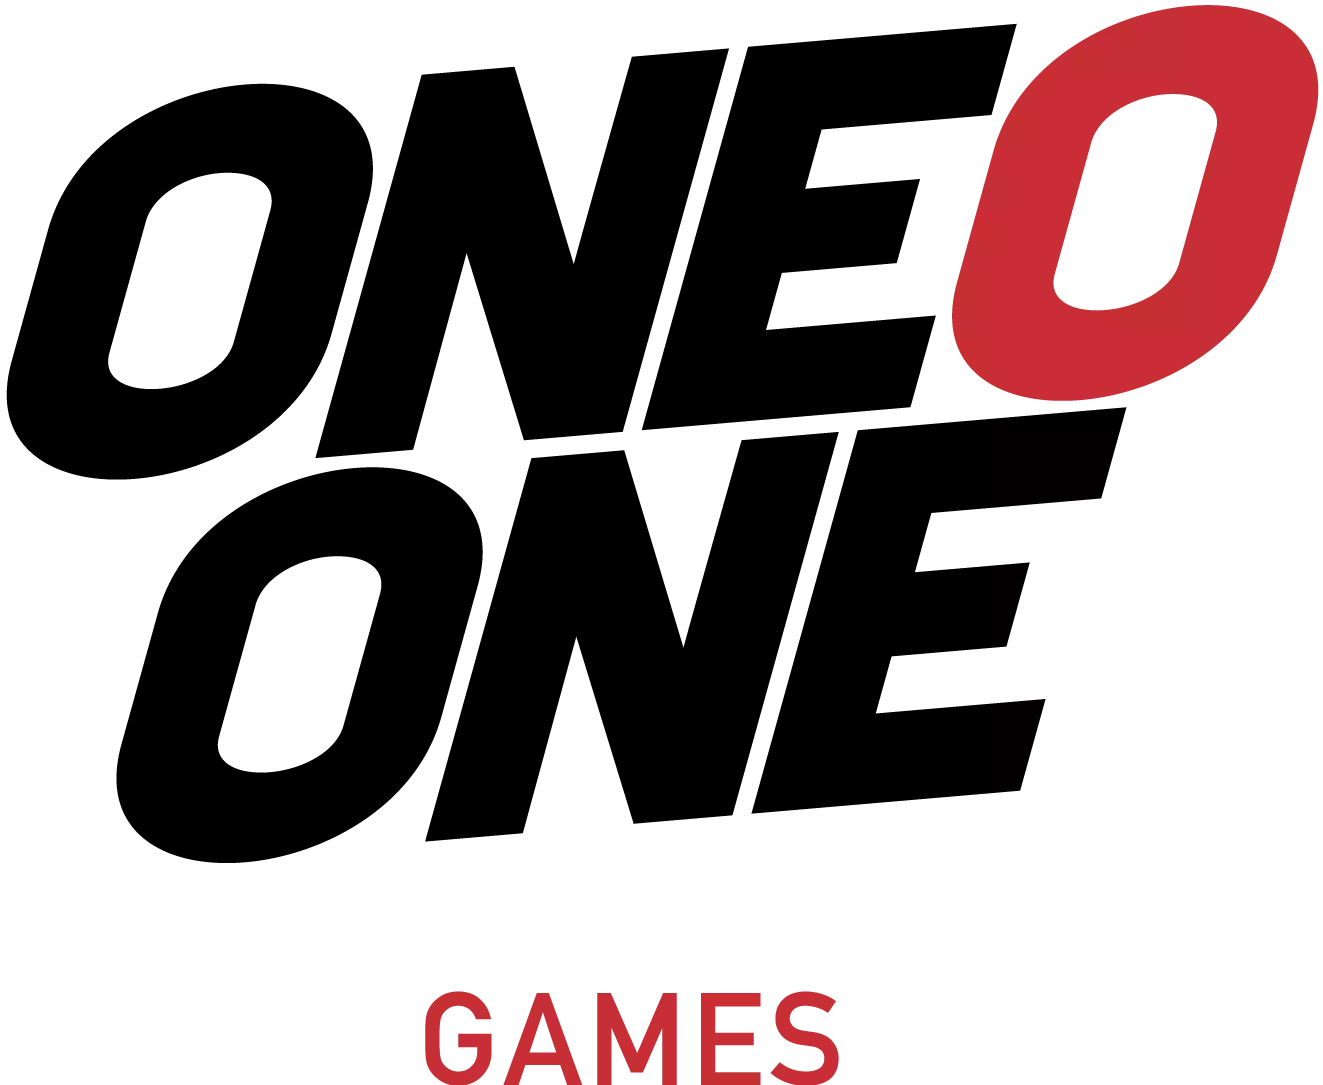 ONE-O-ONE GAMES превращает новаторские идеи в интерактивные виртуальные миры, которые воплощаются в жизнь, когда вы нажимаете кнопку play.